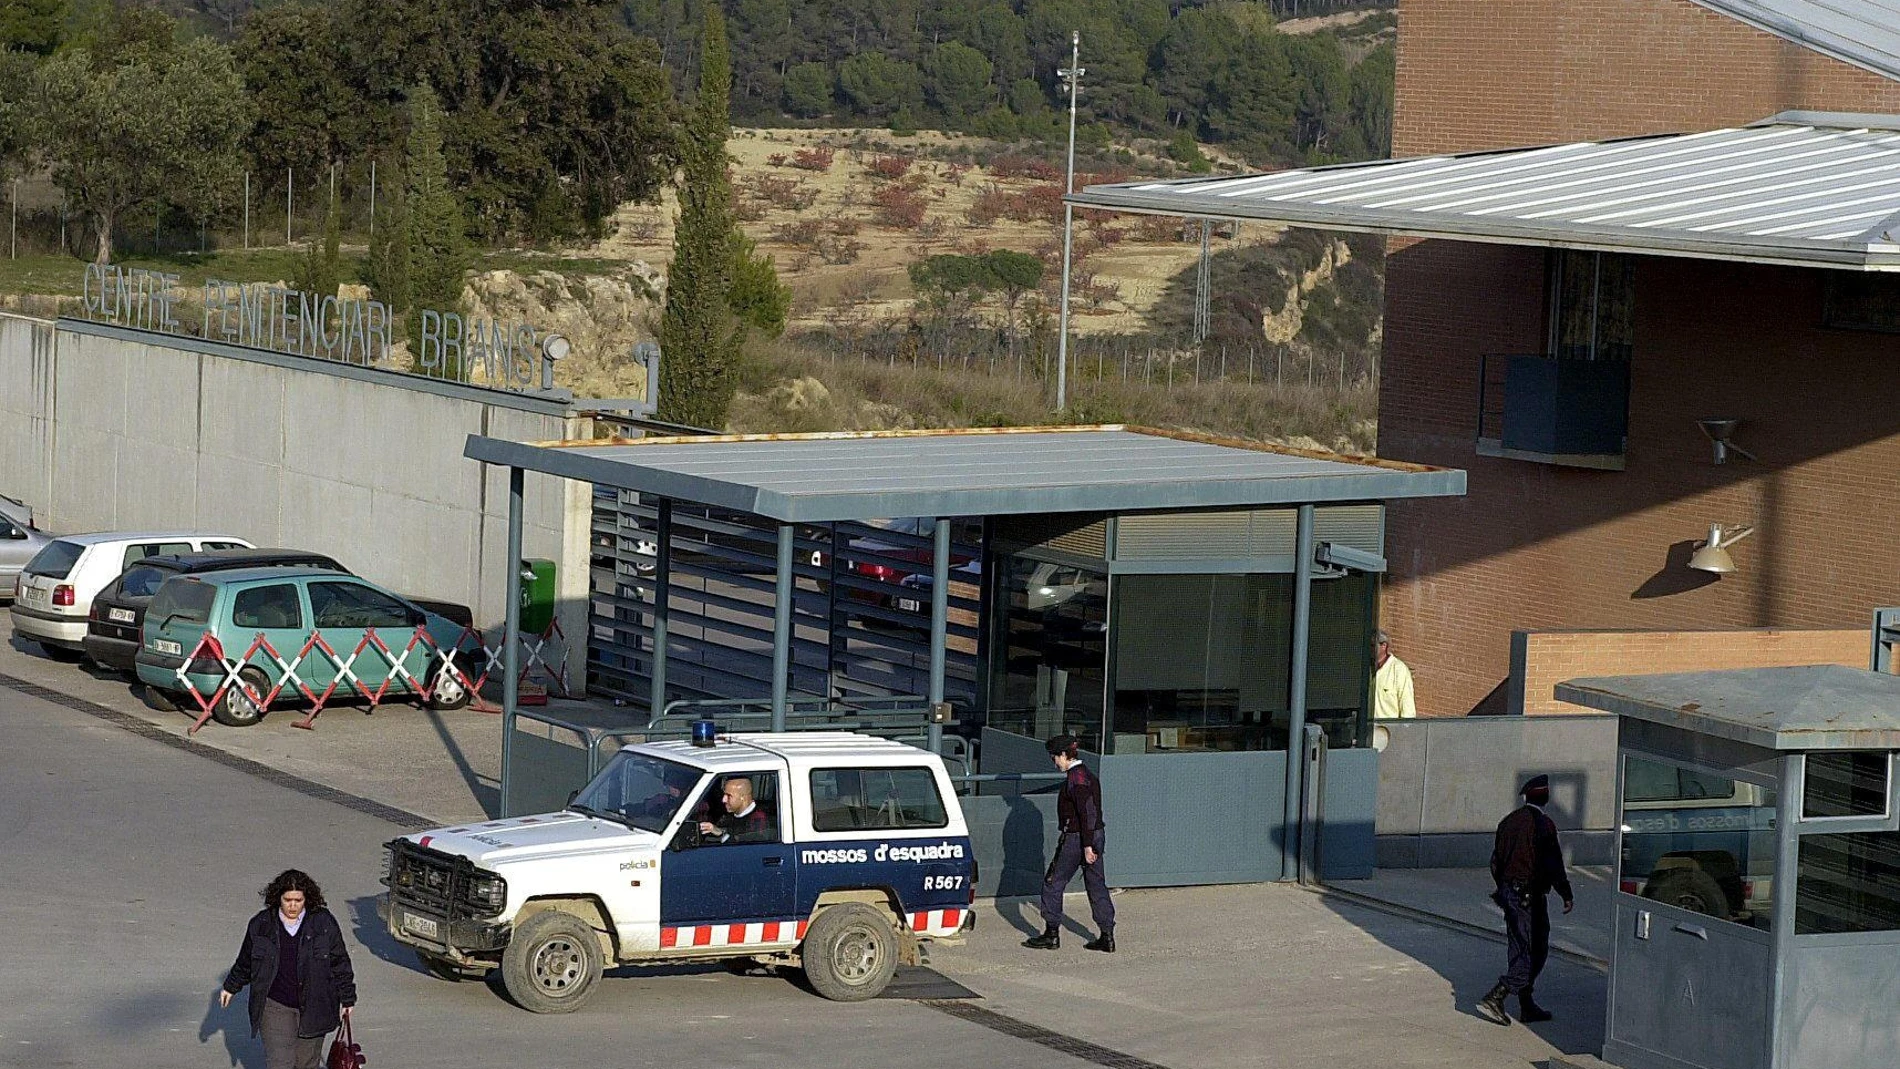 Entrada del recinto penitenciario de Can Brians donde dos presos atacaron al asesino de una menor en Vilanova i la Geltrú